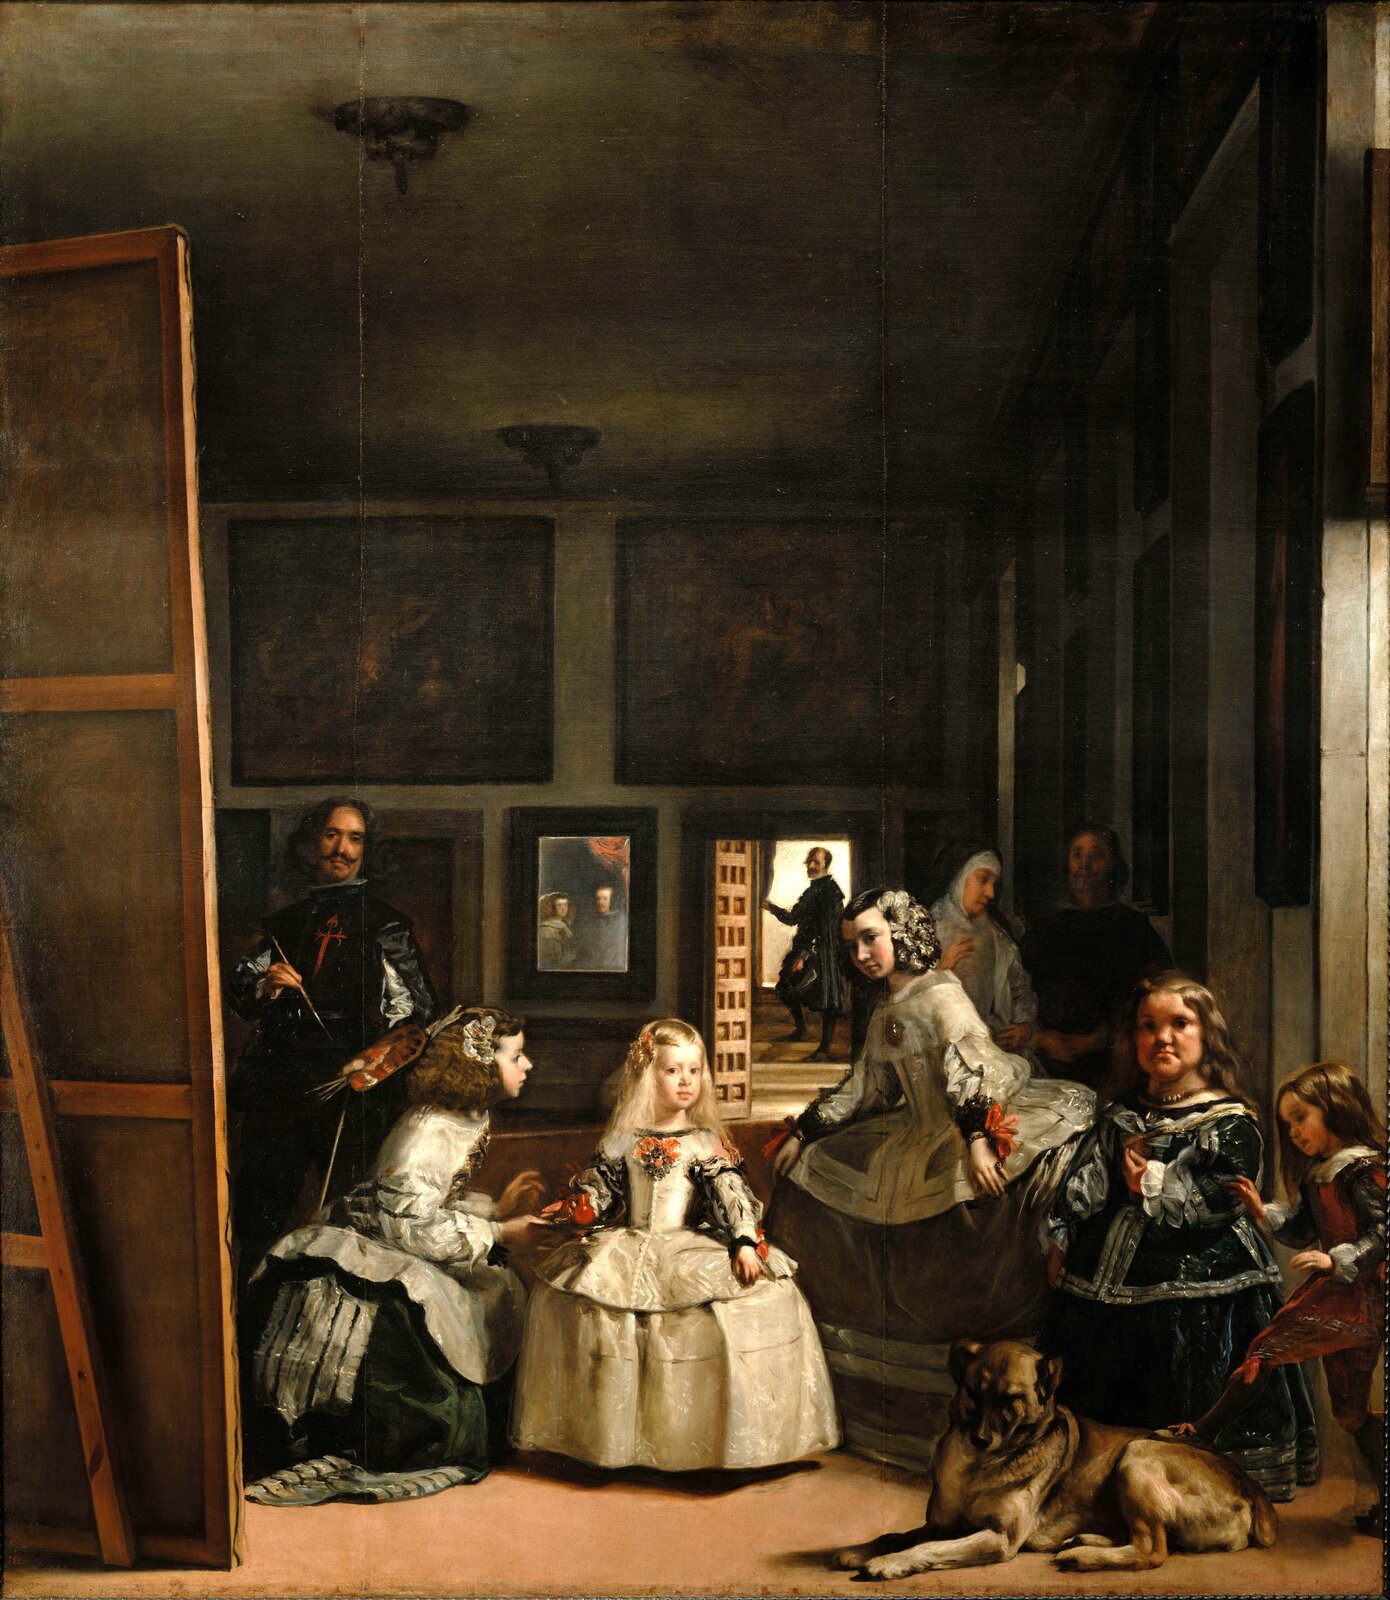 Ilustracja przedstawia dzieło Velázqueza pt. „Panny dworskie”. Obraz przedstawia pięcioletnią infantkę Małgorzatę Teresę, jedyną córkę króla Filipa IV i jego żony Marianny, w uroczystym stroju w otoczeniu dworzan. Scena przedstawiona na obrazie rozgrywa się w galerii Cuarto del Principe Starego Alkazaru w Madrycie. 